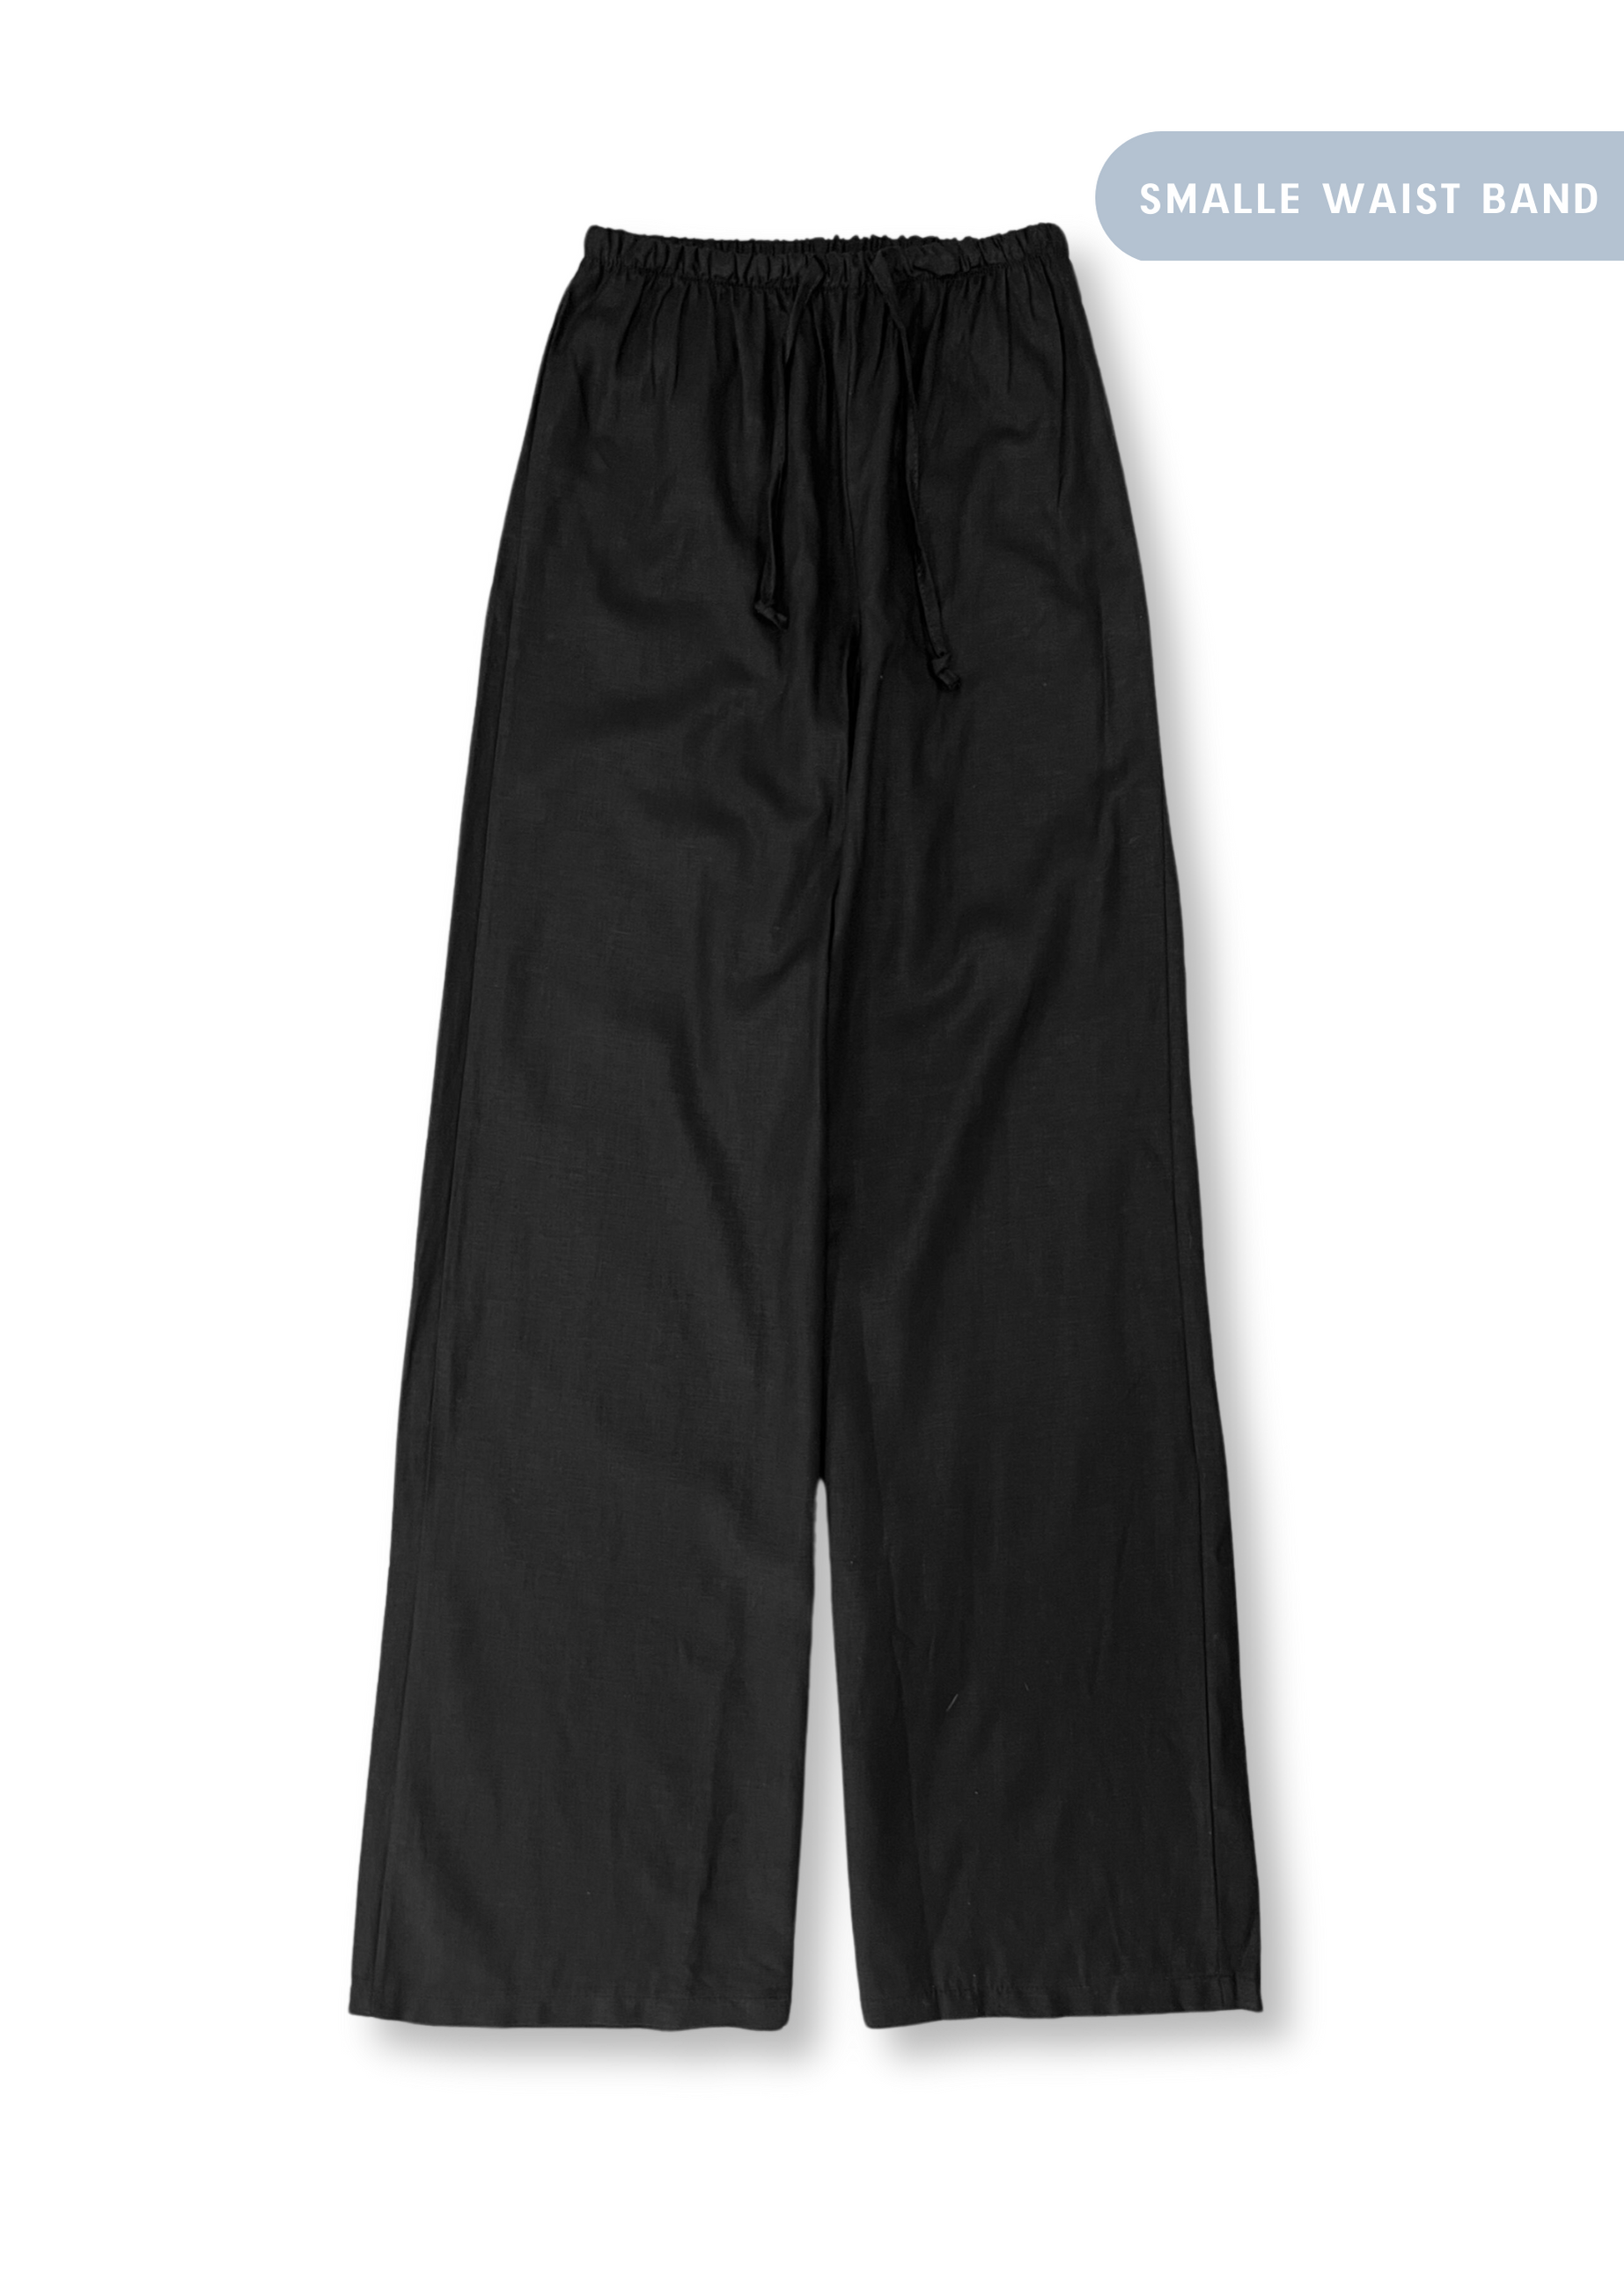 Linen pants small waist band black (REGULAR)